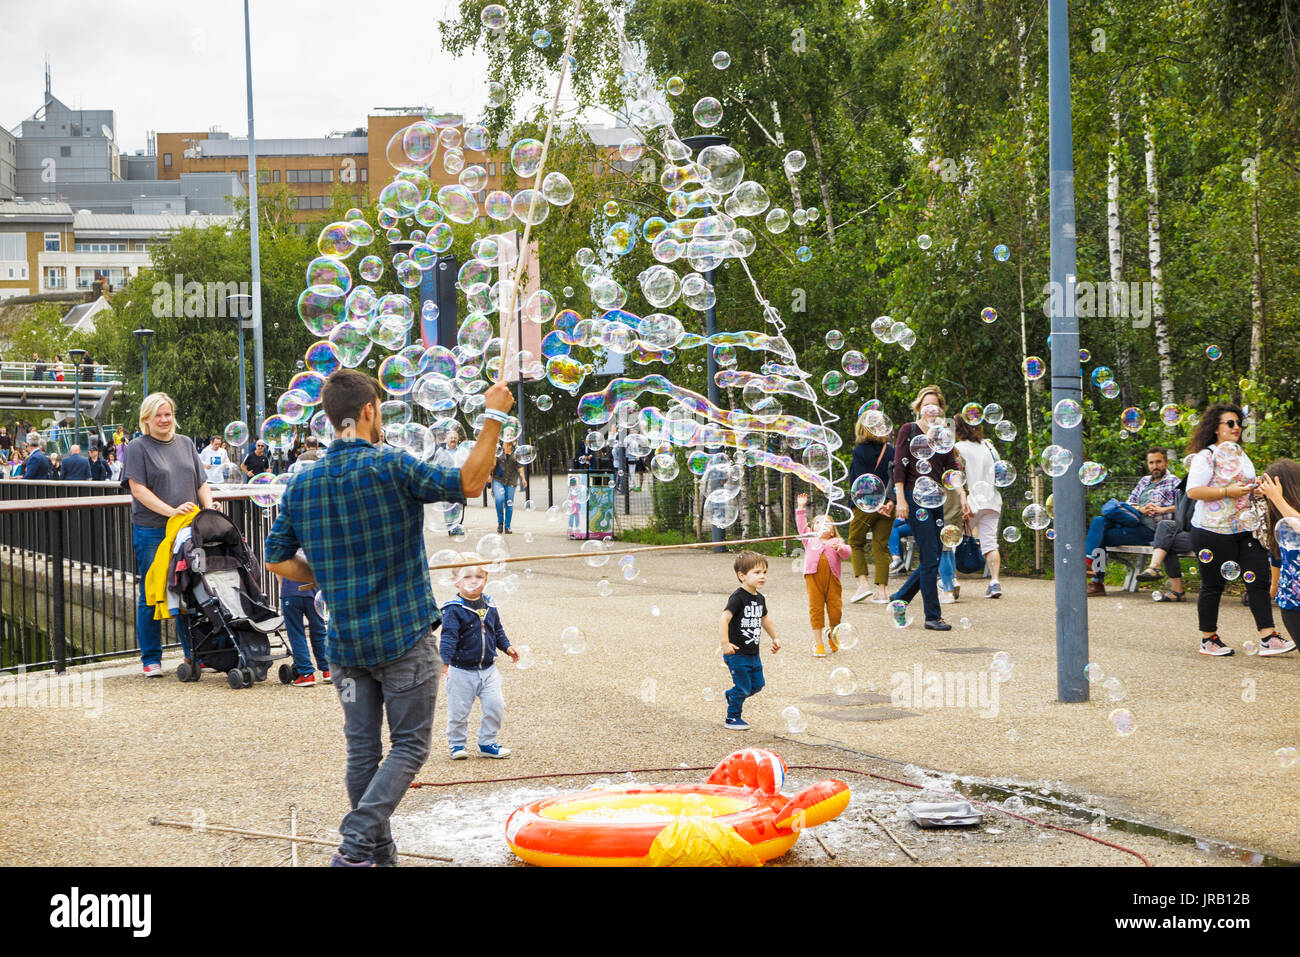 Artiste de rue aux enfants conseils sollicitation en soufflant de grandes bulles colorées, Bankside, remblai, South Bank, Londres SE1, UK Banque D'Images